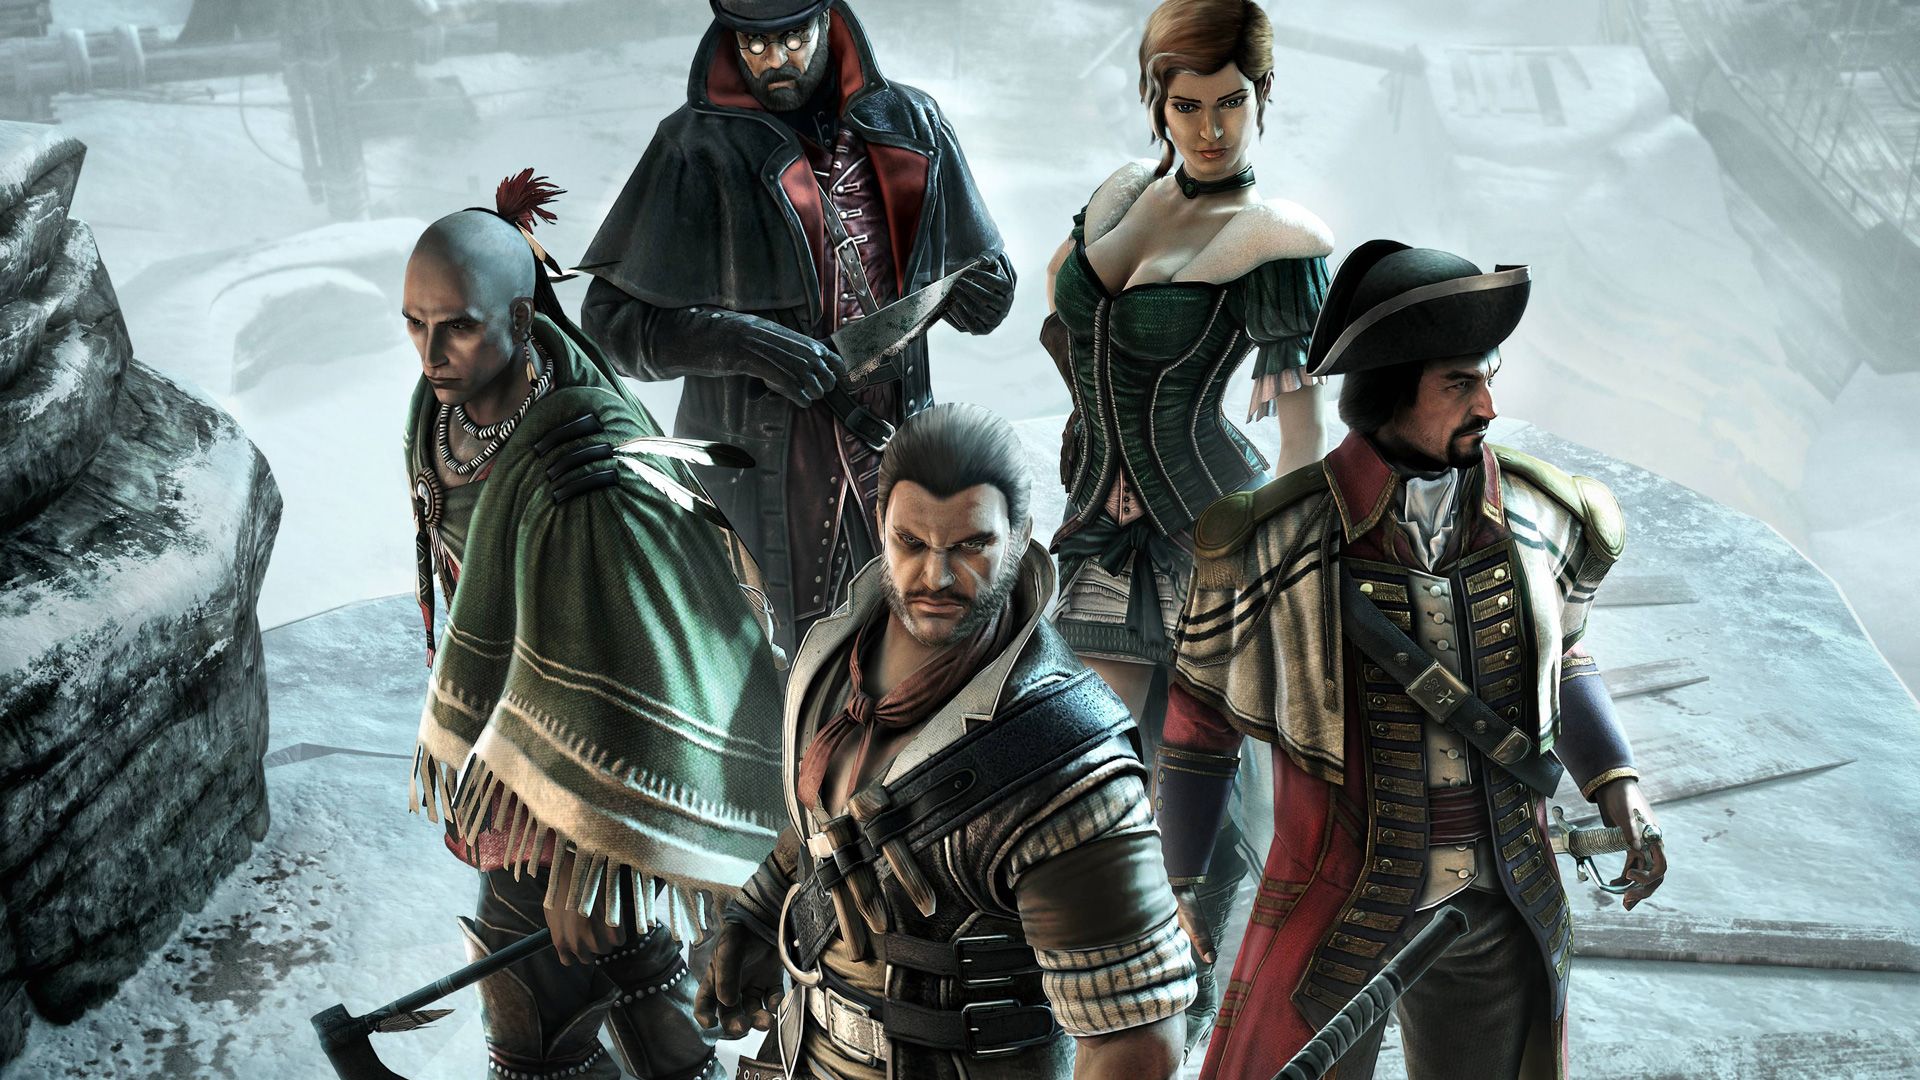 Assassins Creed 3 Multiplayer - The Assassins Wallpaper